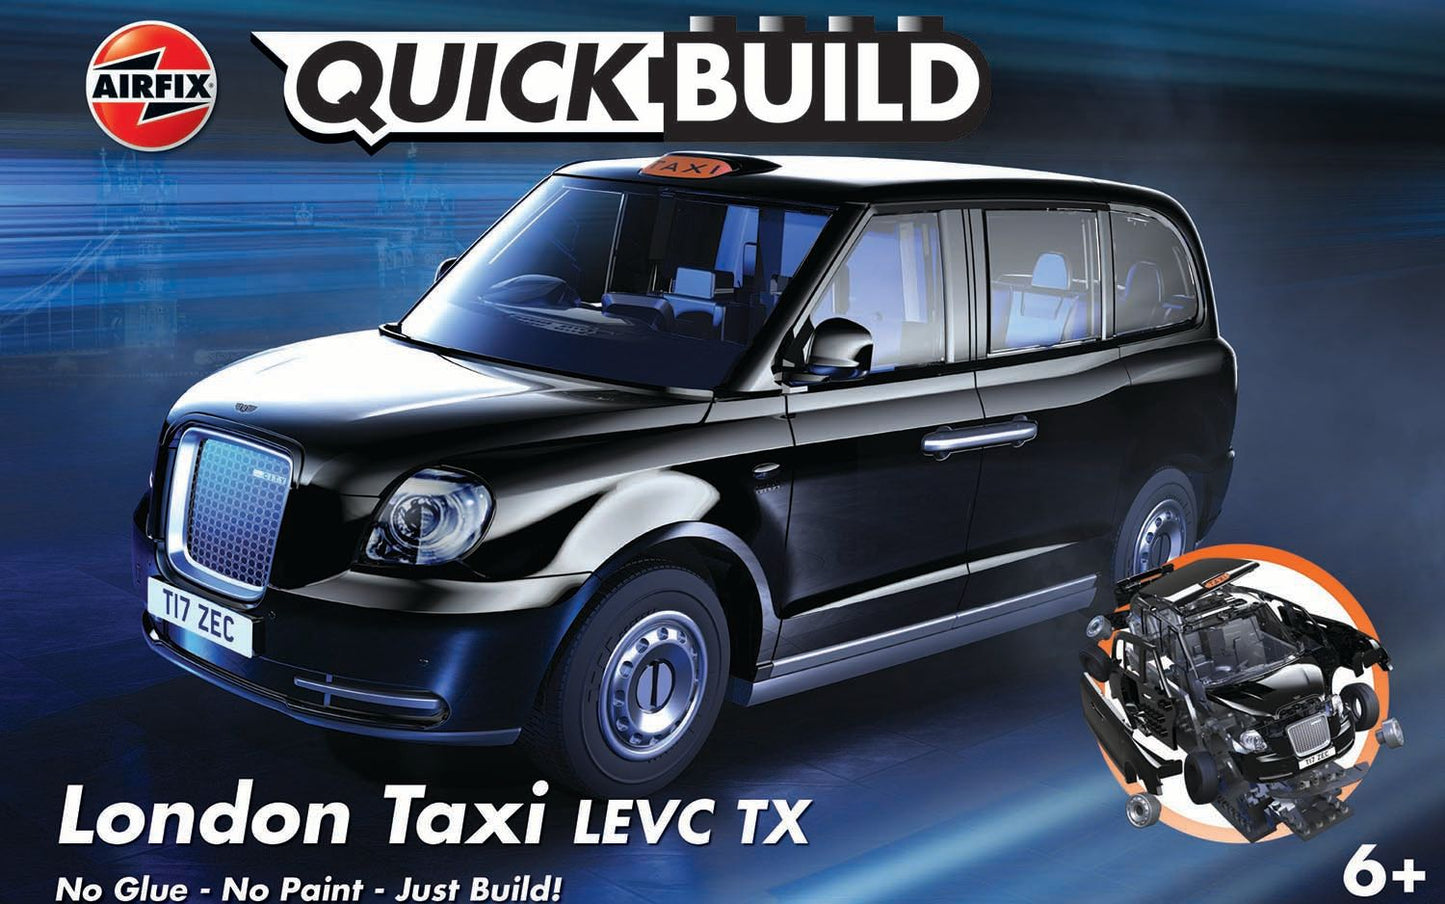 London Taxi Levec TX Quick Build